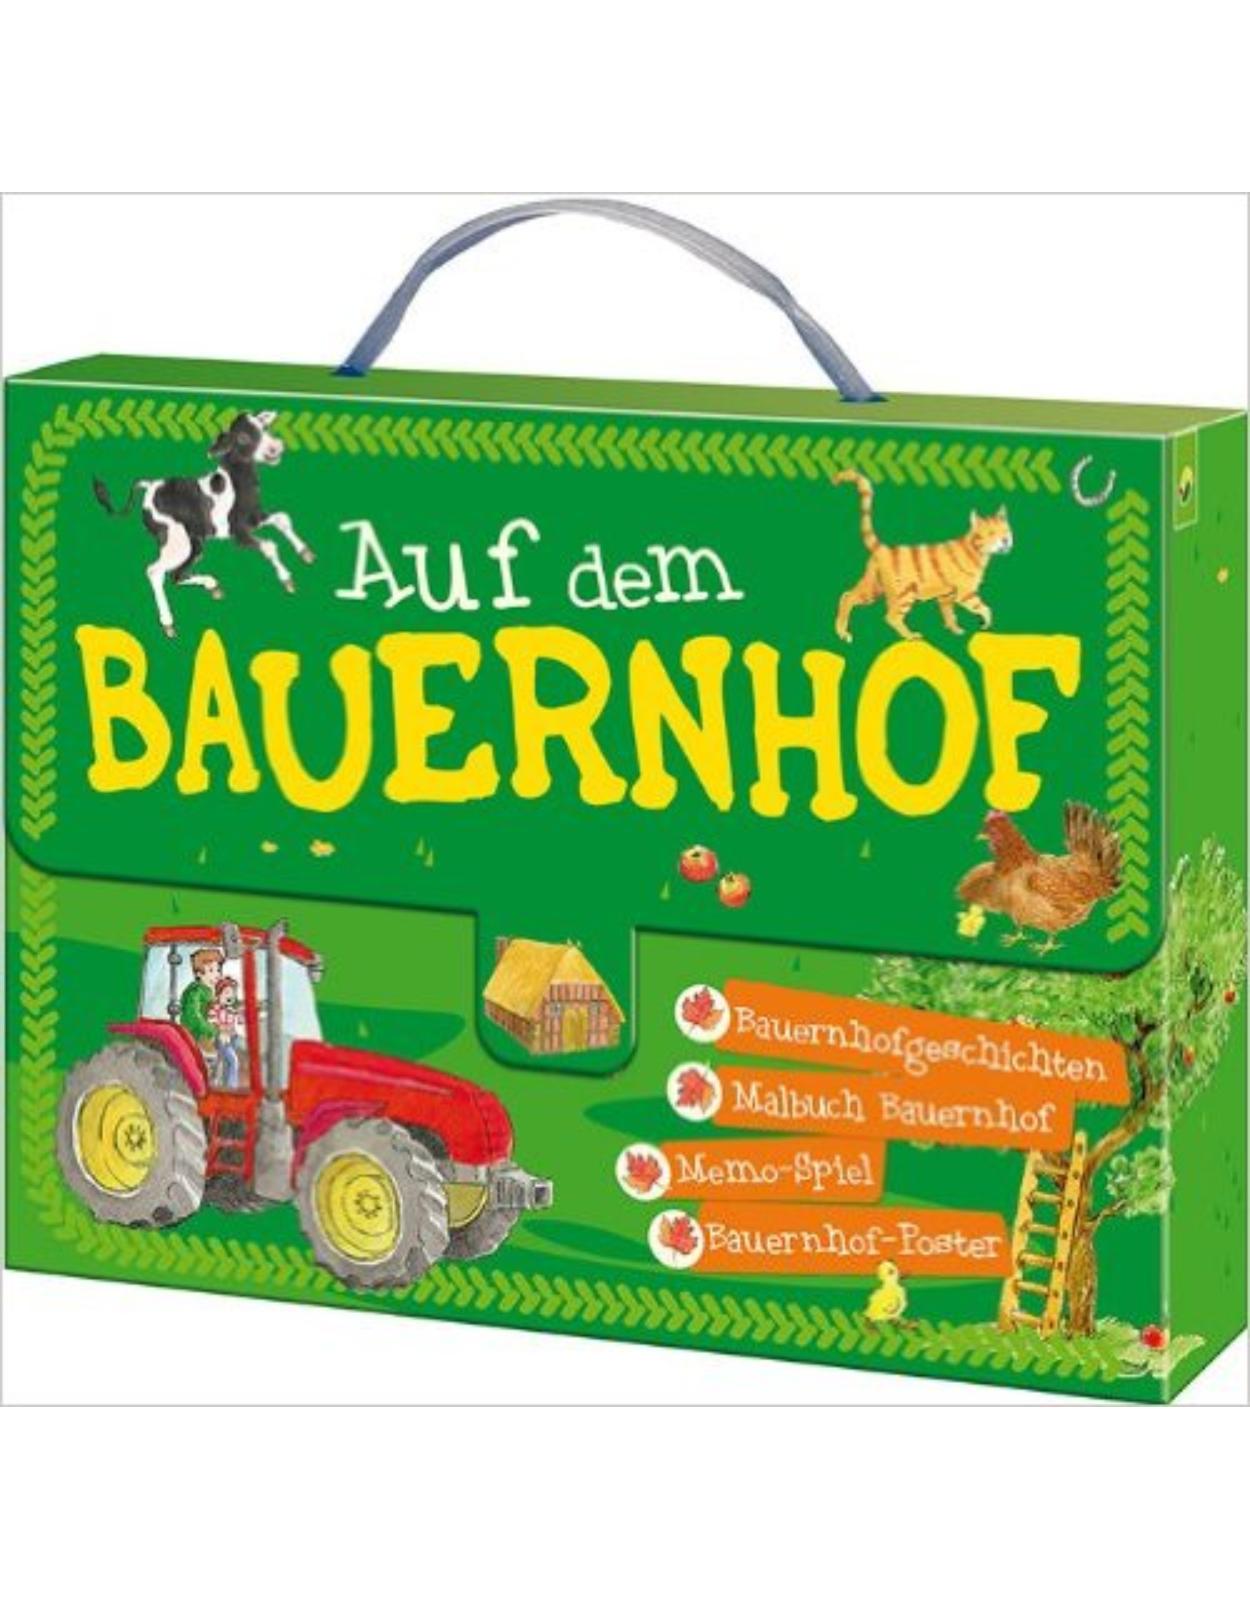 Kinderkoffer - Auf dem Bauernhof: Bauernhofgeschichten - Malbuch Bauernhof - Memo-Spiel - Bauernhof-Poster